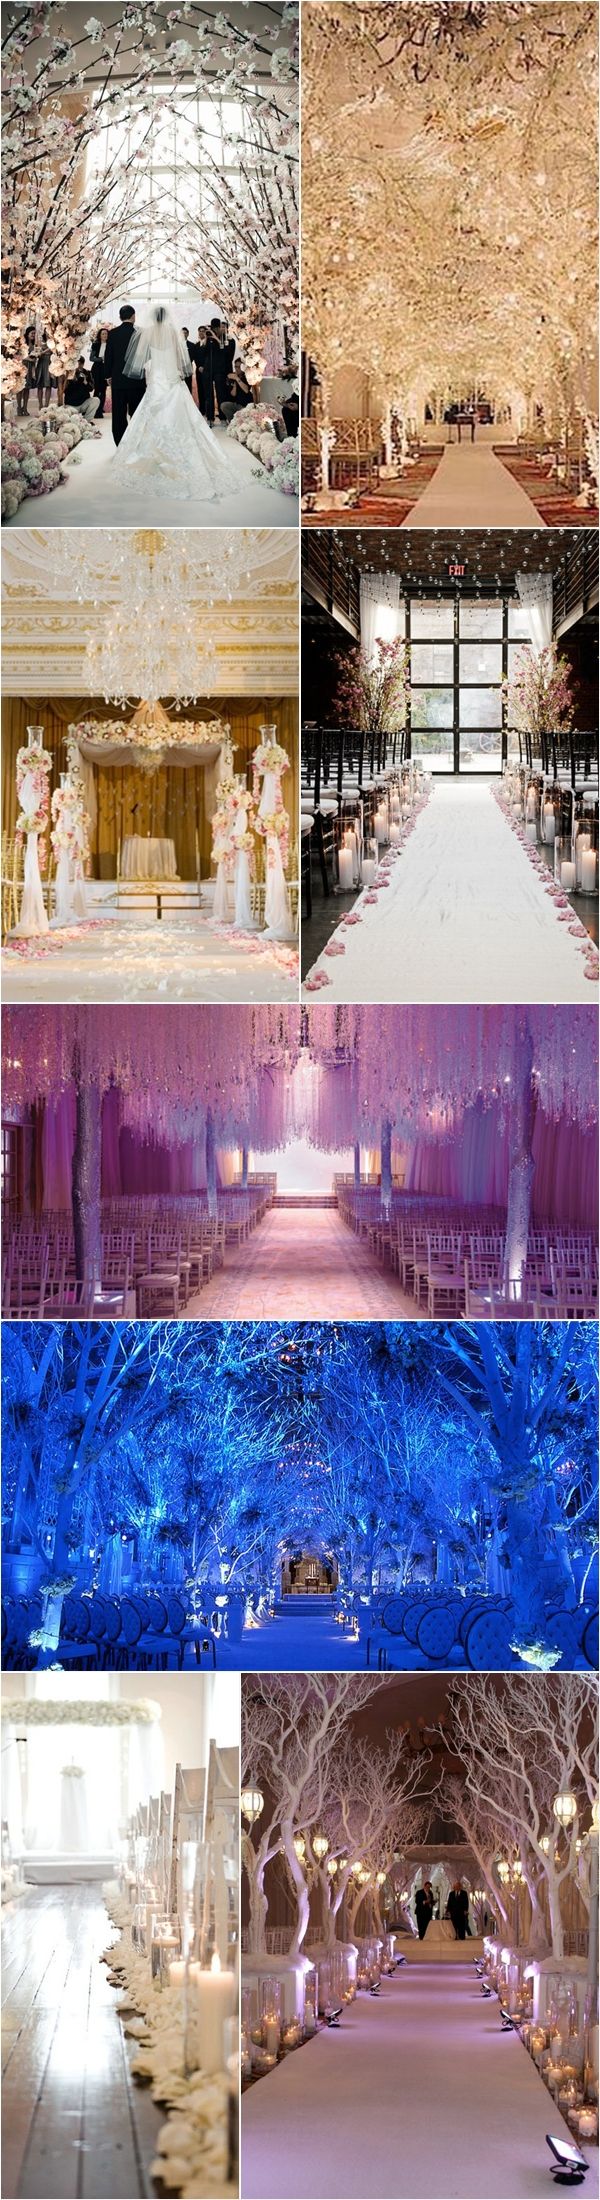 Winter Wedding Aisle Décor Ideas